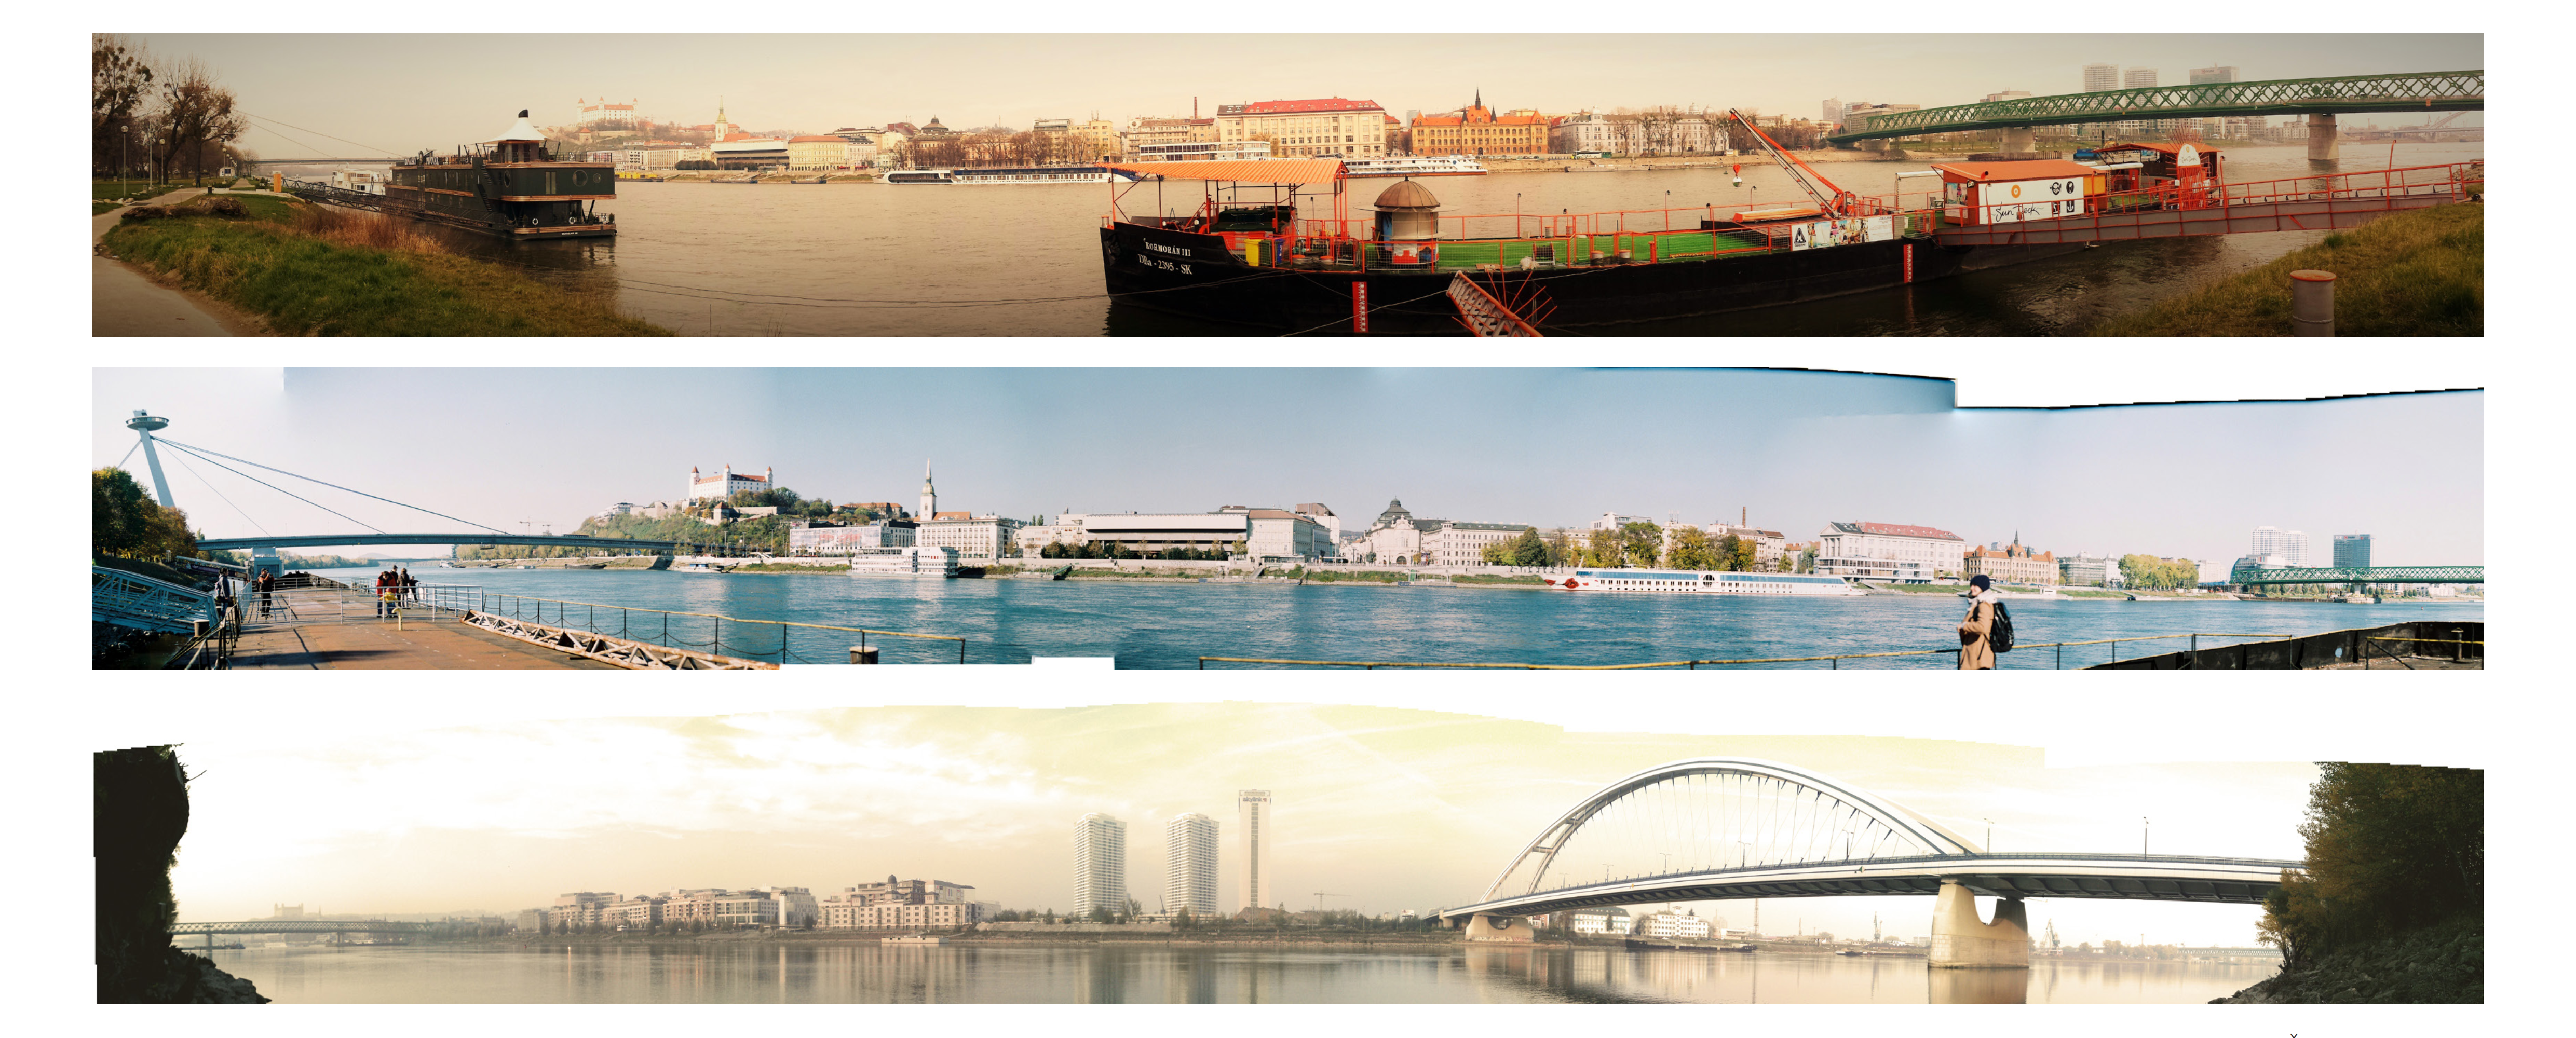 ČO: historická veduta, Dunaj, Staré mesto. KDE: osobný prístav a námestie